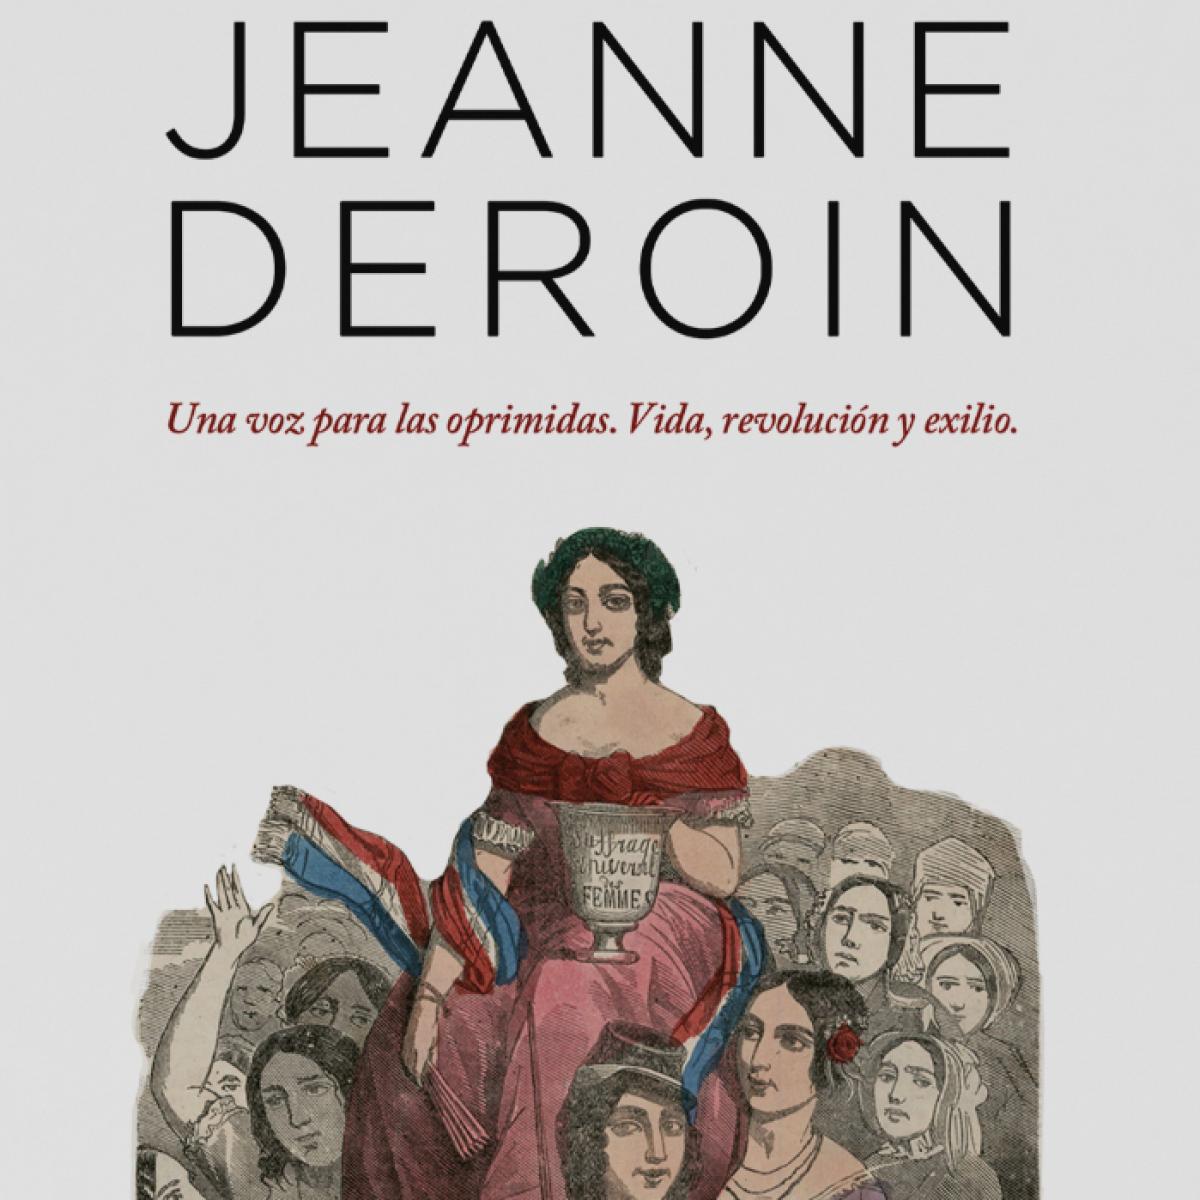 Jeanne Deroin BANNER